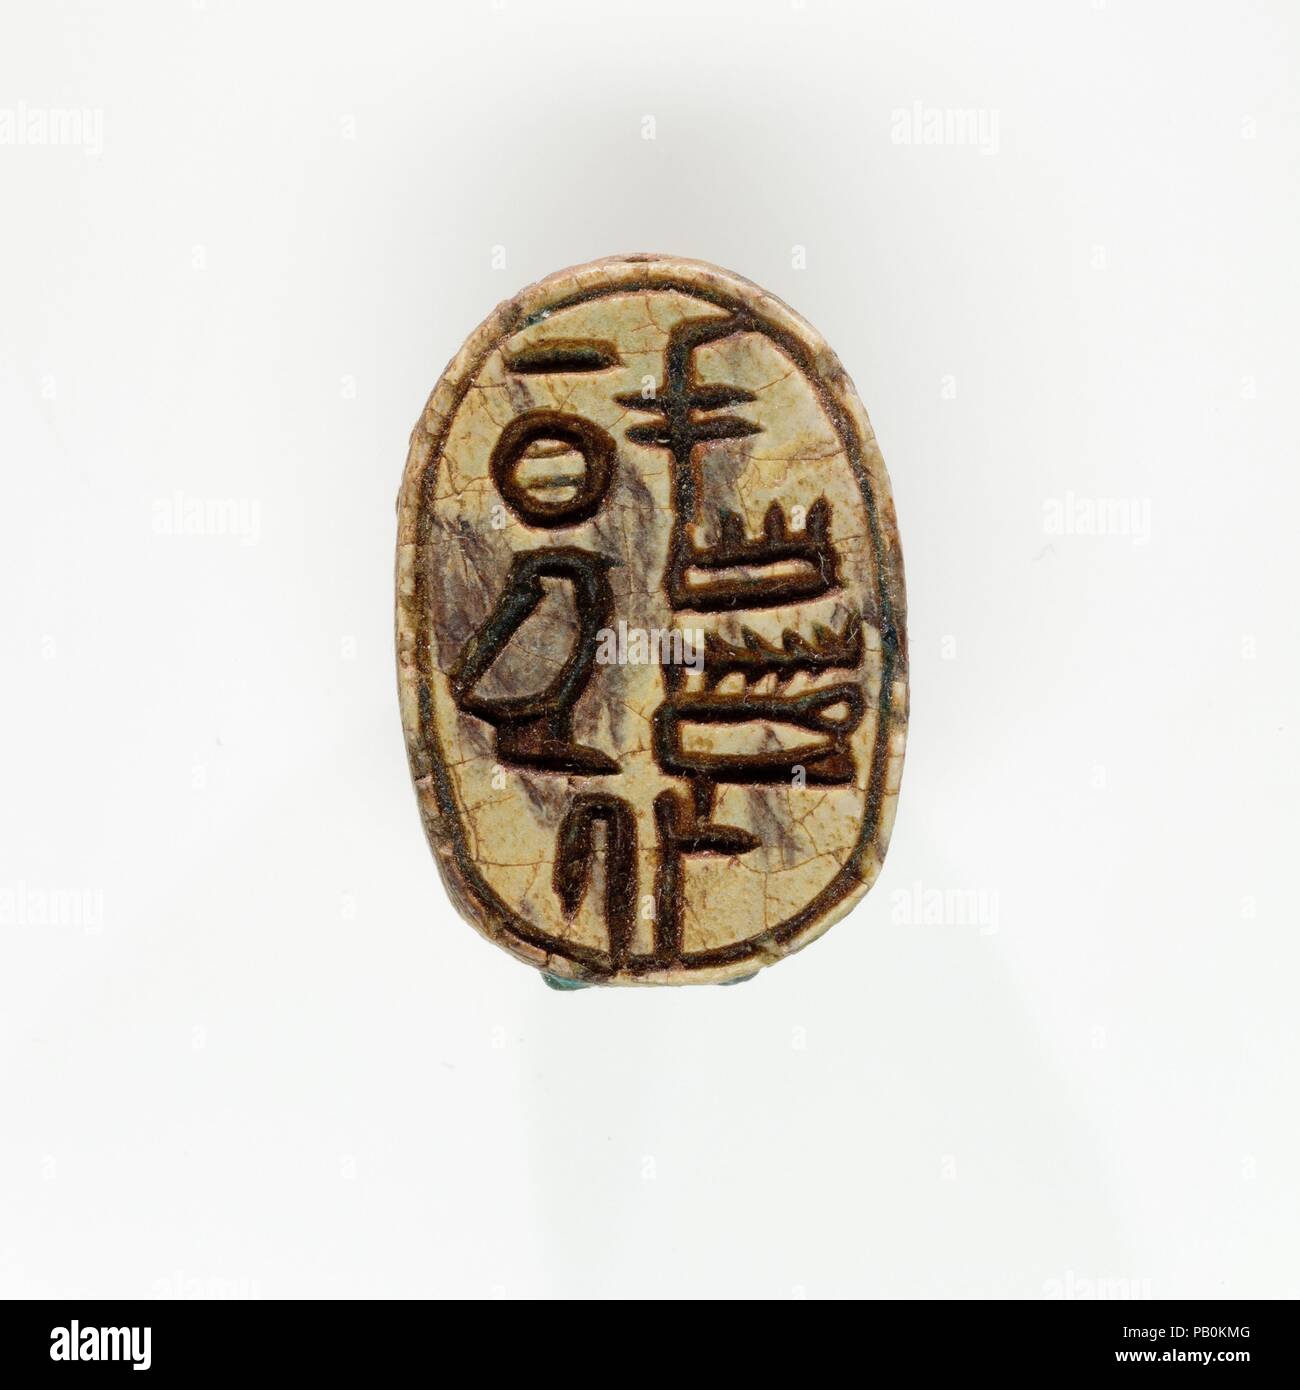 Skarabäus von ruiu der Beerdigung. Abmessungen: L 2,2 cm (7/8 in.); W. 1,5 cm (9/16 in.); H 0,9 cm (3/8 in.). Dynastie: Dynasty 18, früh. Herrschaft: Regierungszeit Thutmose I. - früher alleinige Thutmose III. Datum: Ca. 1504-1447 v. Chr.. Die Beerdigung von Ruiu wurde in das Grab ihres Vaters, Neferkhawet, die von ägyptischen Expedition des Museums im Jahre 1935 ausgegraben wurde gefunden. Lügen gegen die rechte Seite des Kopfes Ende Ruiu der Sarg war einen kleinen Korb, dass ein Holz- und ein Metall razor enthalten. In der Kiste waren vier Skarabäen und eine cowroid Dichtung - Amulett aus Speckstein, zwei Ebenholz kohl Sticks, und eine kleine Metalllöffel. Th Stockfoto